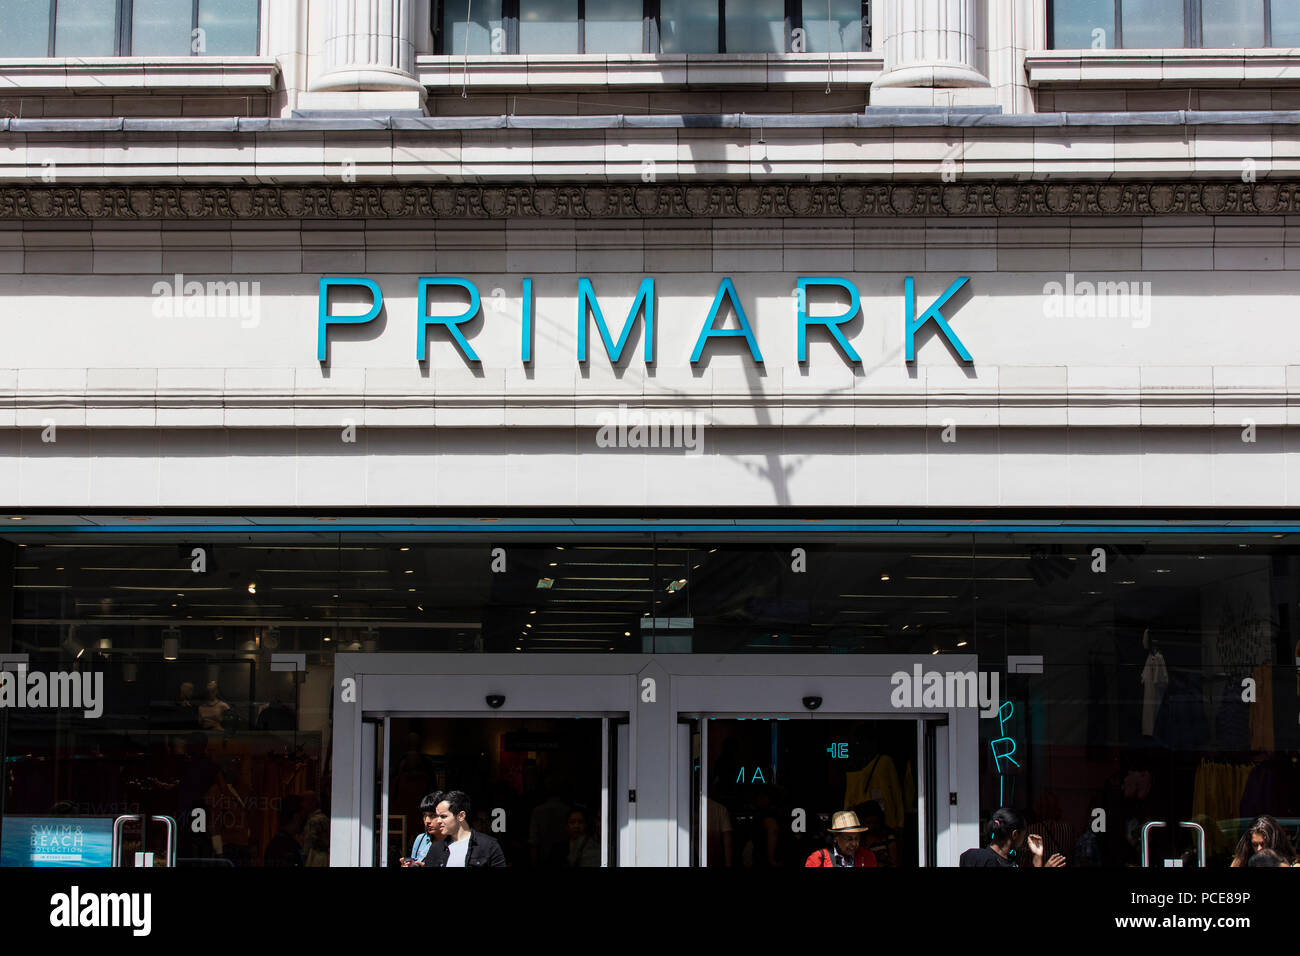 Londres, Royaume-Uni - 31 juillet 2018 : Primark magasin de vêtements/sur Oxford Street, au centre de Londres. Banque D'Images